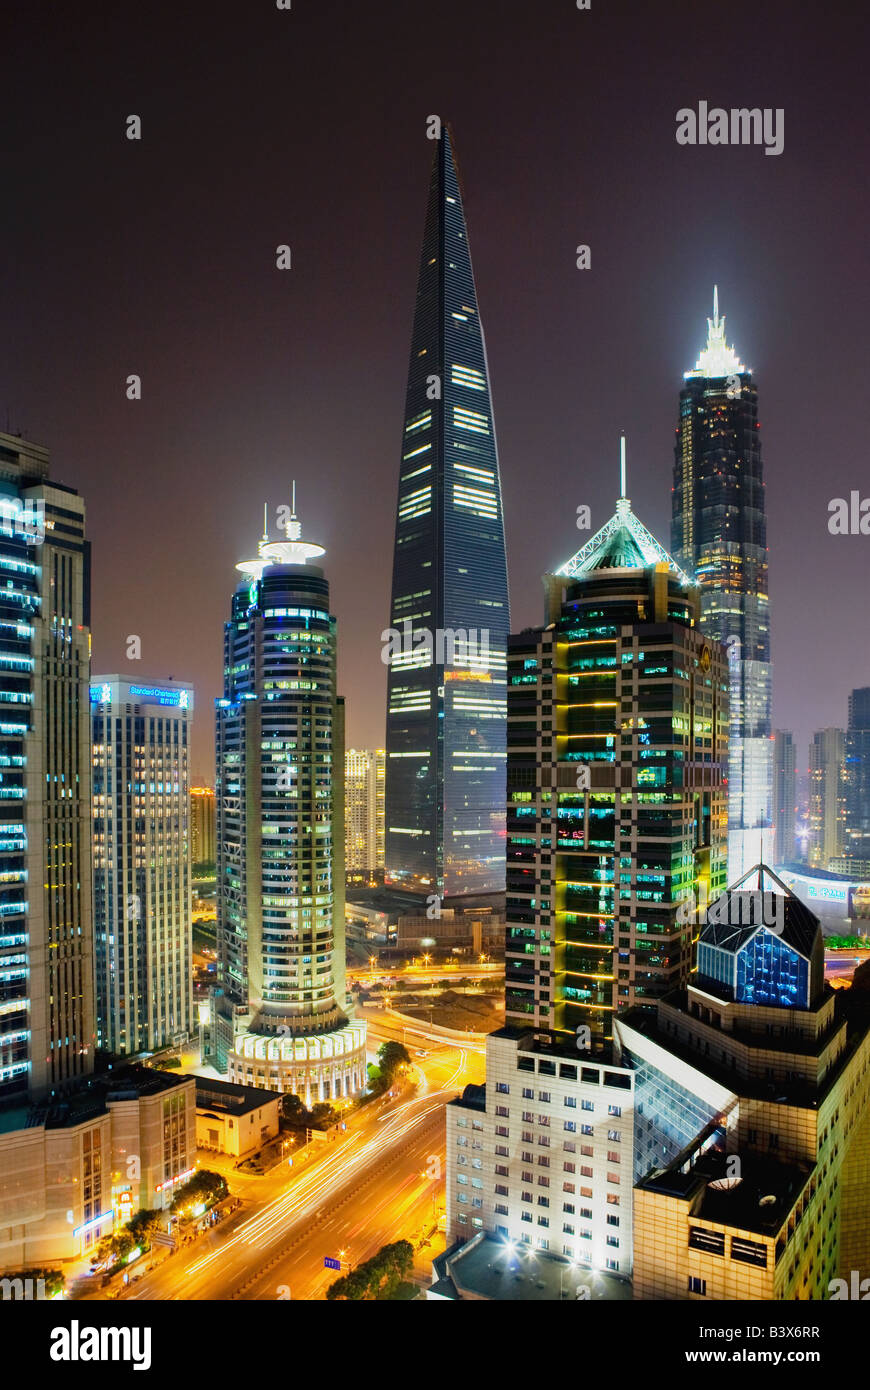 Il quartiere finanziario edifici per uffici compreso il World Financial Center di Shanghai (C) e la Torre di Jin Mao. Il Pudong di Shanghai. Foto Stock